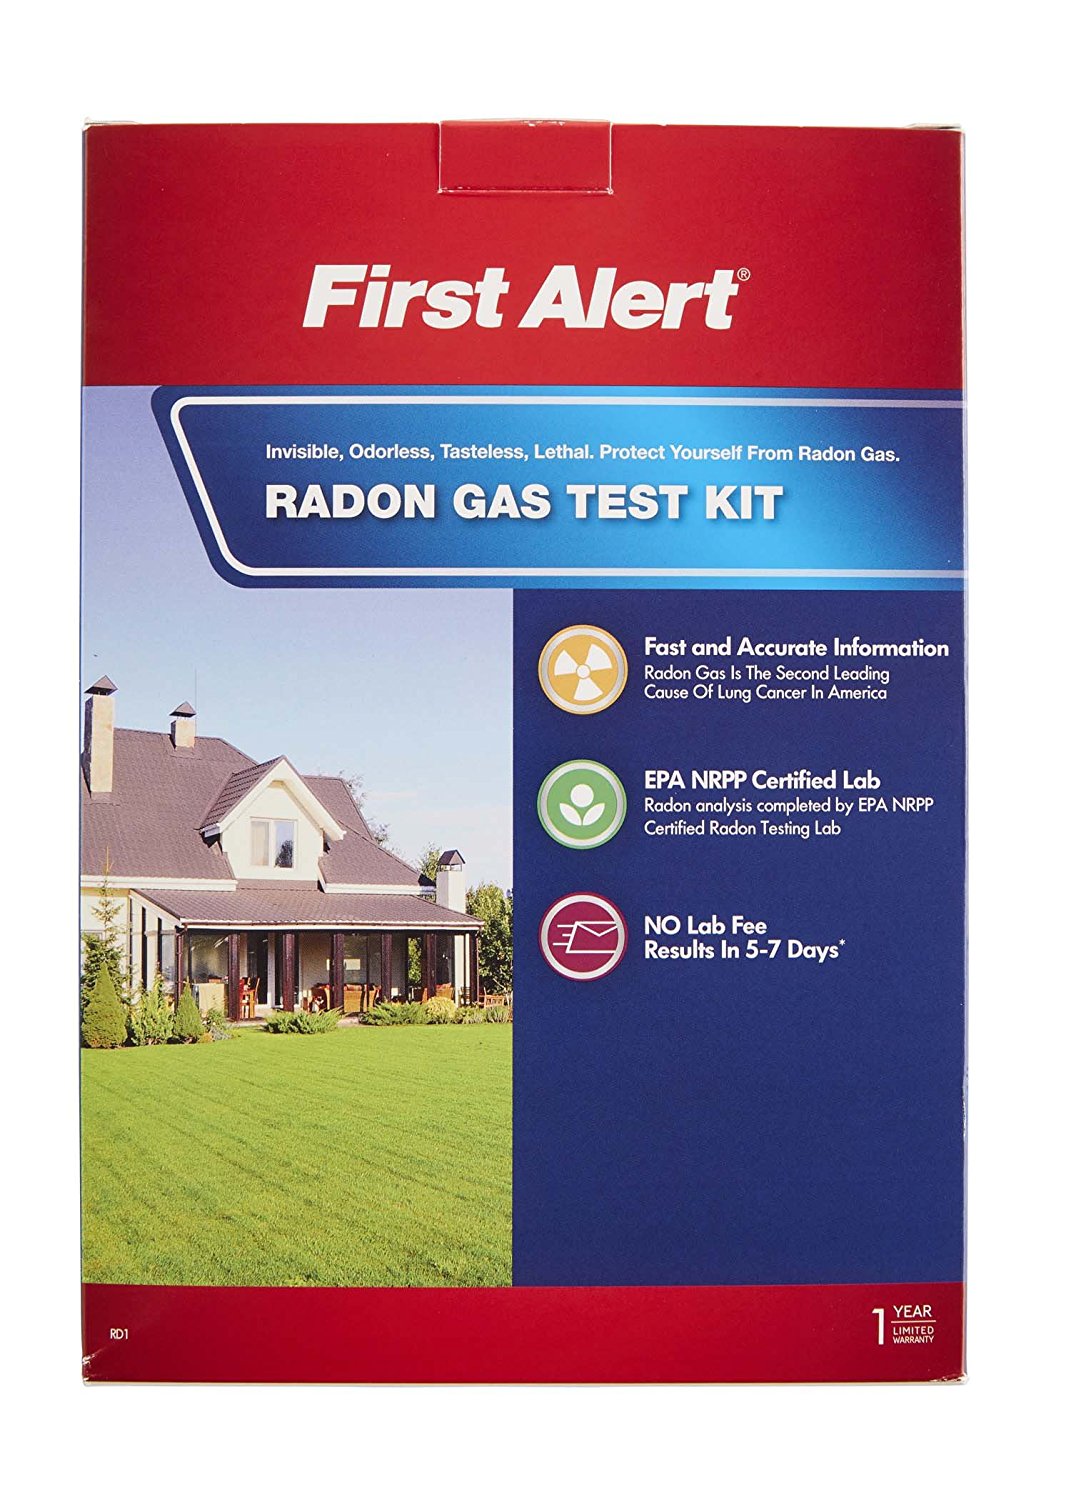 First Alert radon gas test kit